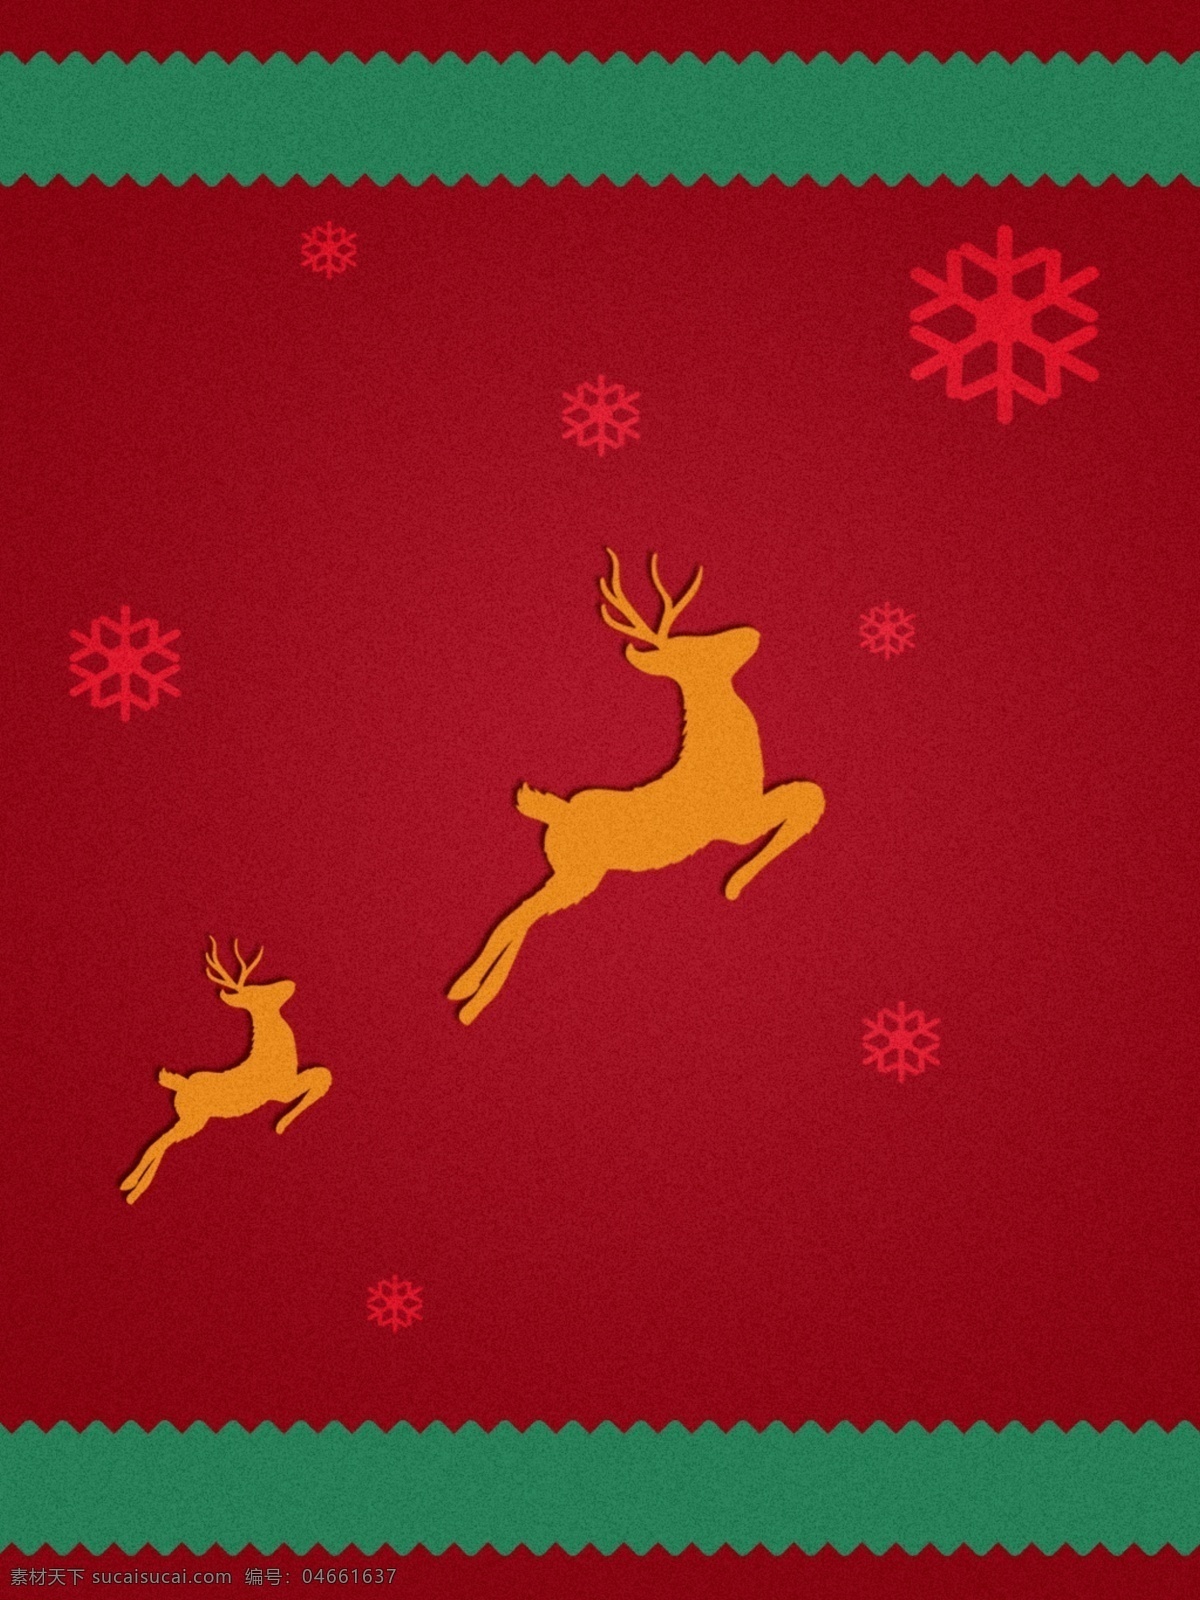 原创 麋鹿 铃铛 圣诞 红色 背景 红色背景 雪花 圣诞背景 节日背景